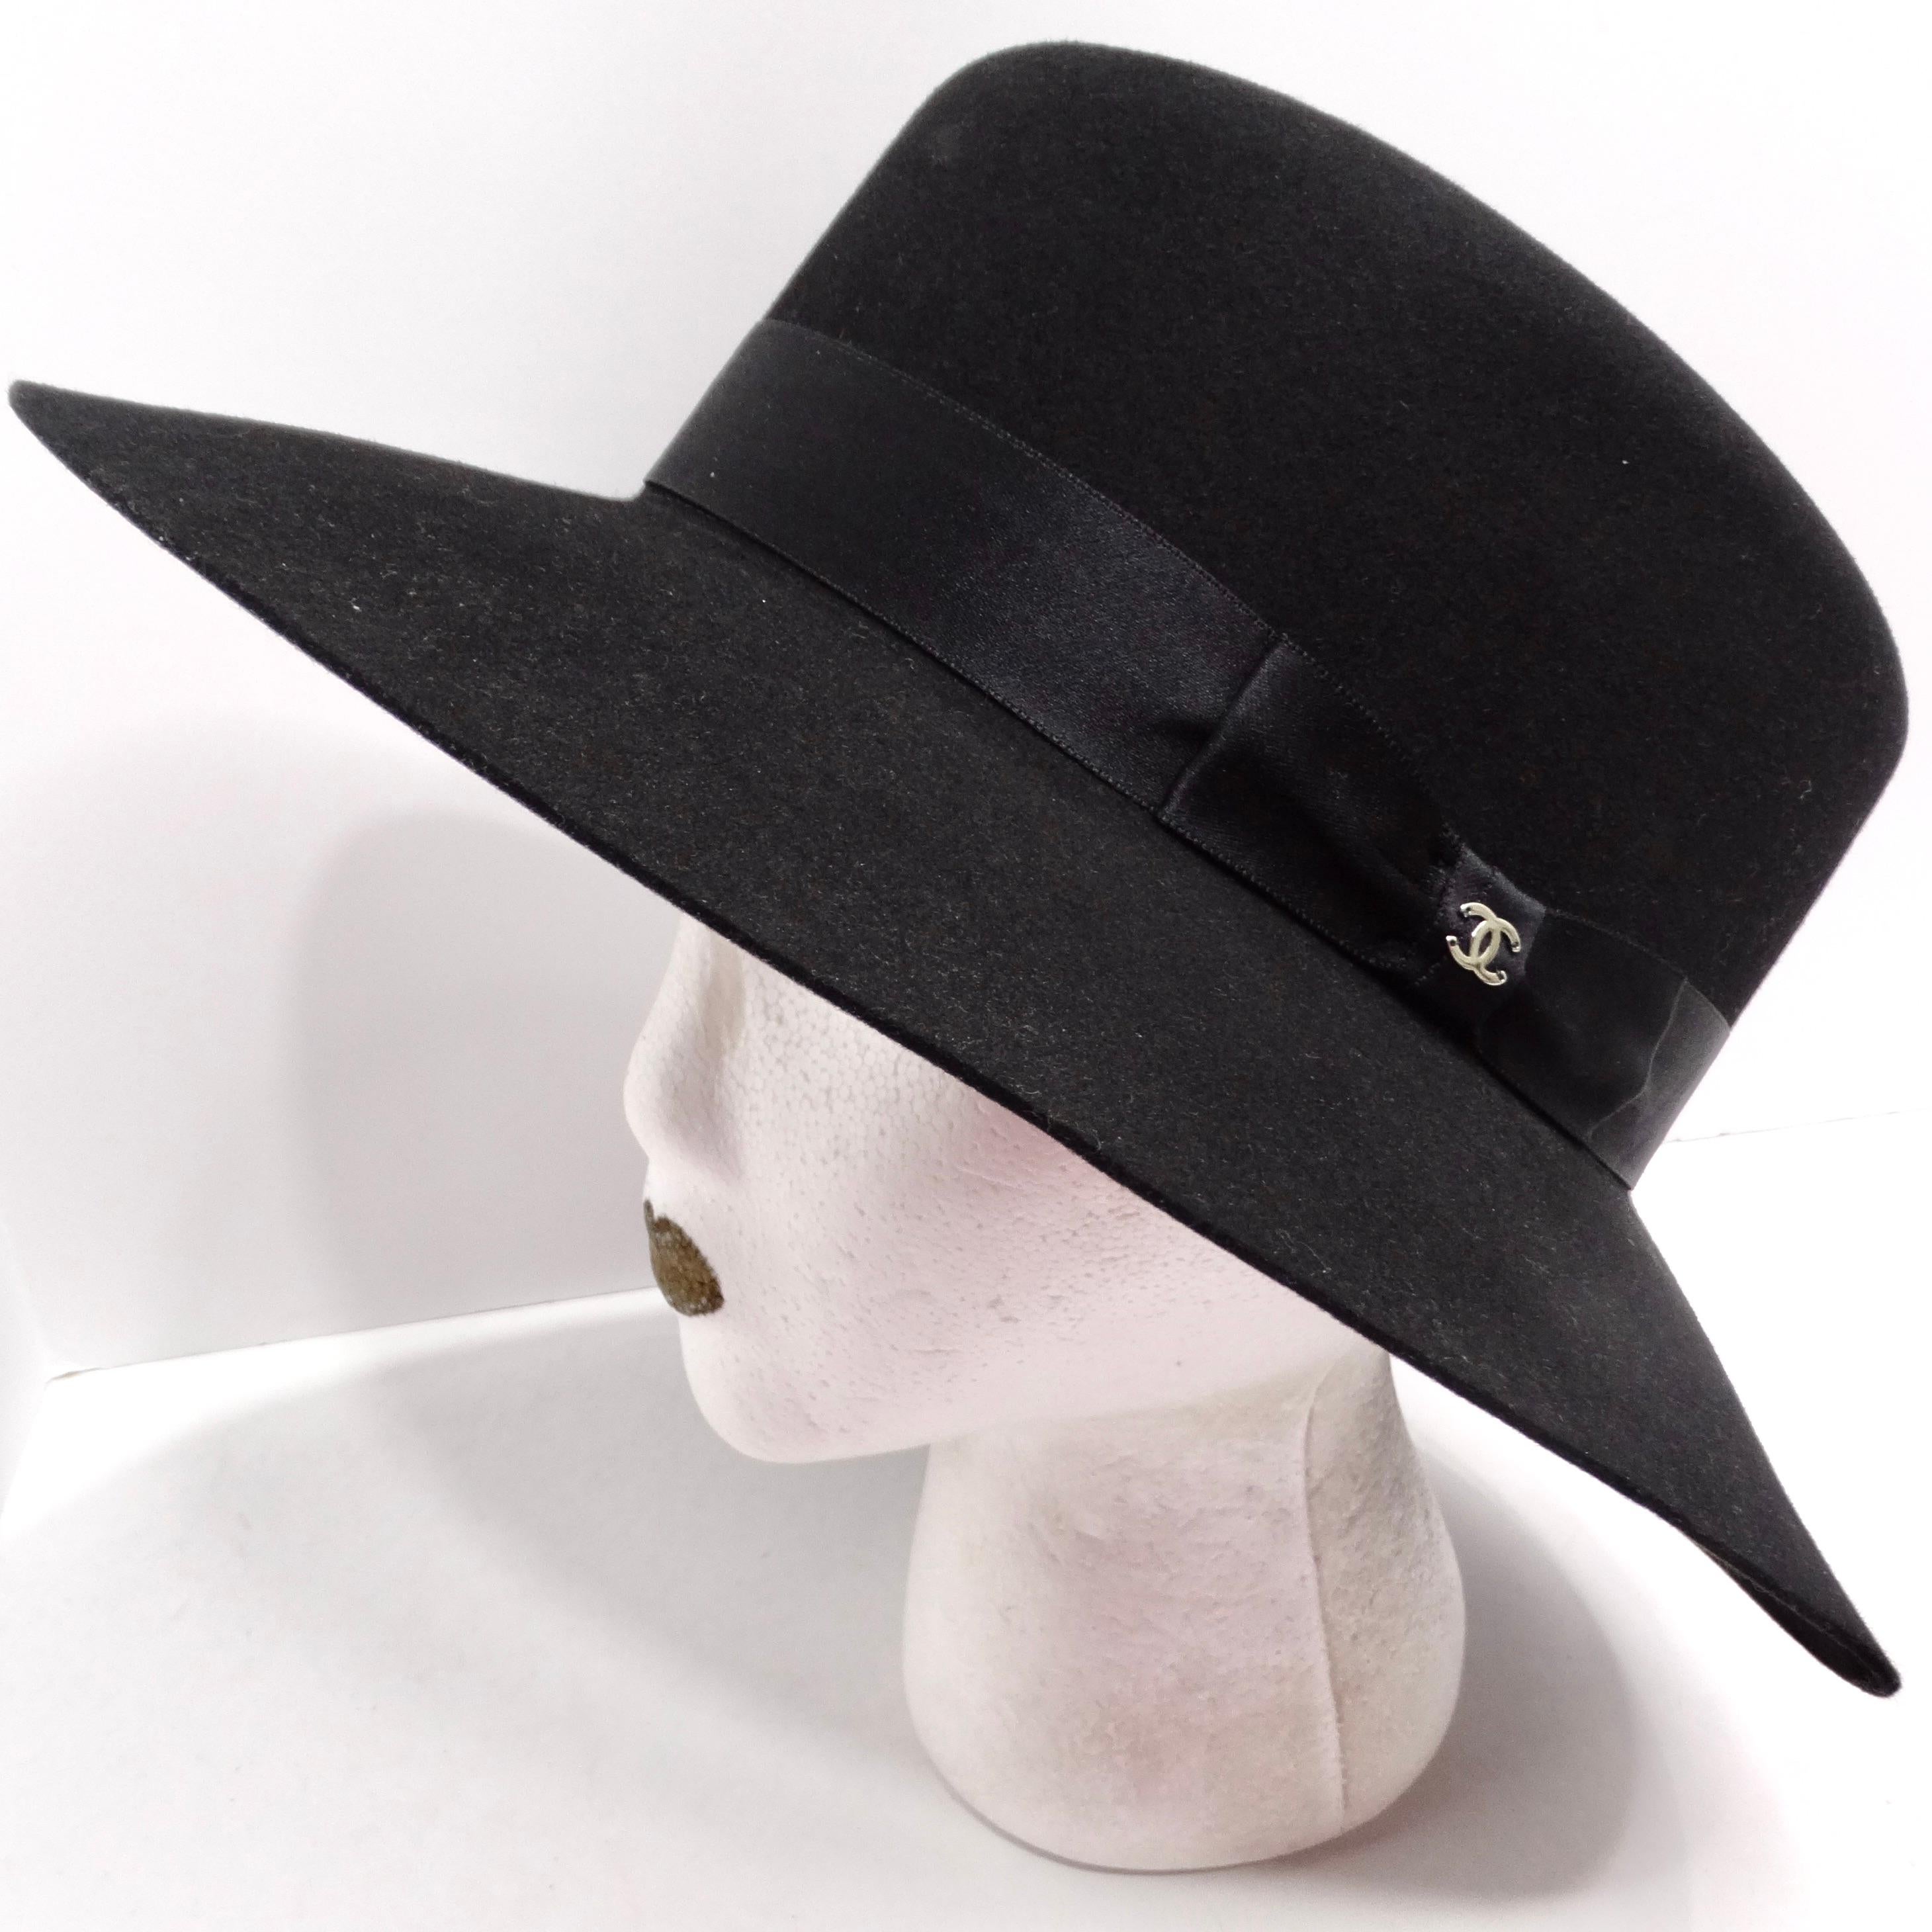 Die Chanel CC Mütze aus schwarzem Kaninchenfell ist ein exquisites und vielseitiges Accessoire, das Luxus und zeitlose Eleganz nahtlos miteinander verbindet. Diese Mütze aus Kaninchenfell ist nicht nur eine Kopfbedeckung, sondern ein raffiniertes